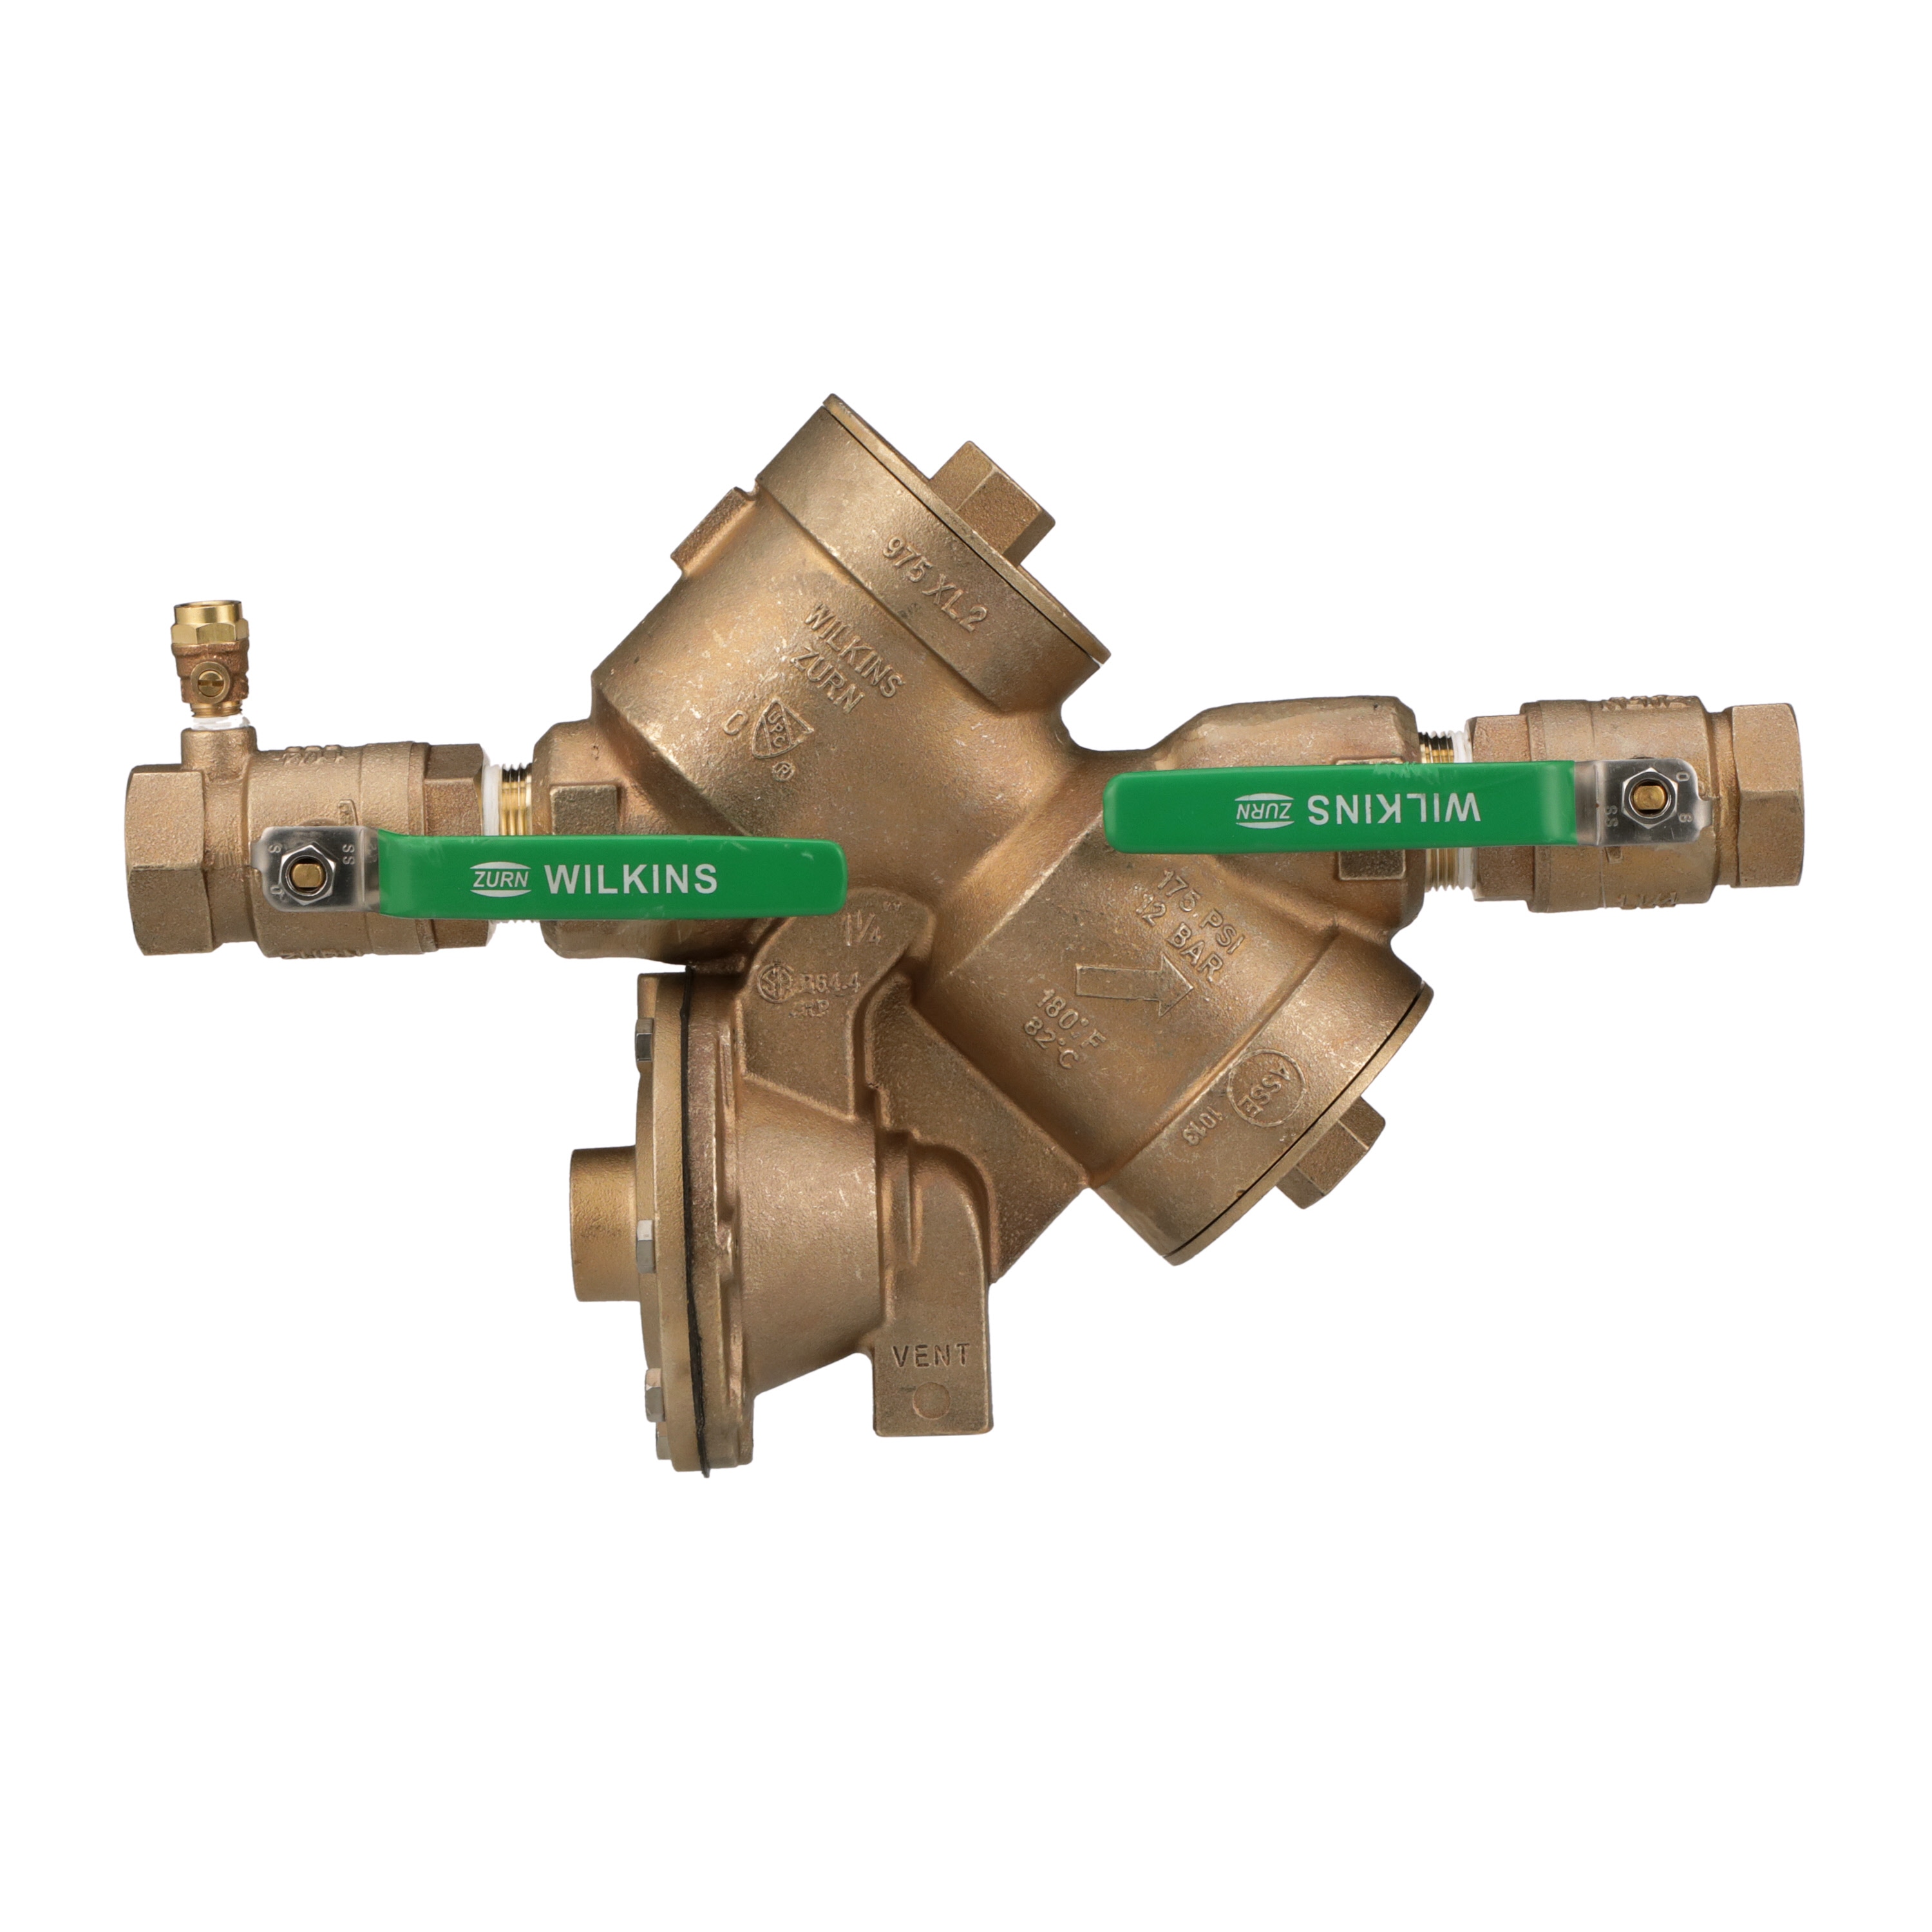 Model 975XL2 Bronze Fnpt 1-1/4-in Reduced Pressure Backflow Preventer | - Zurn Wilkins 114-975XL2